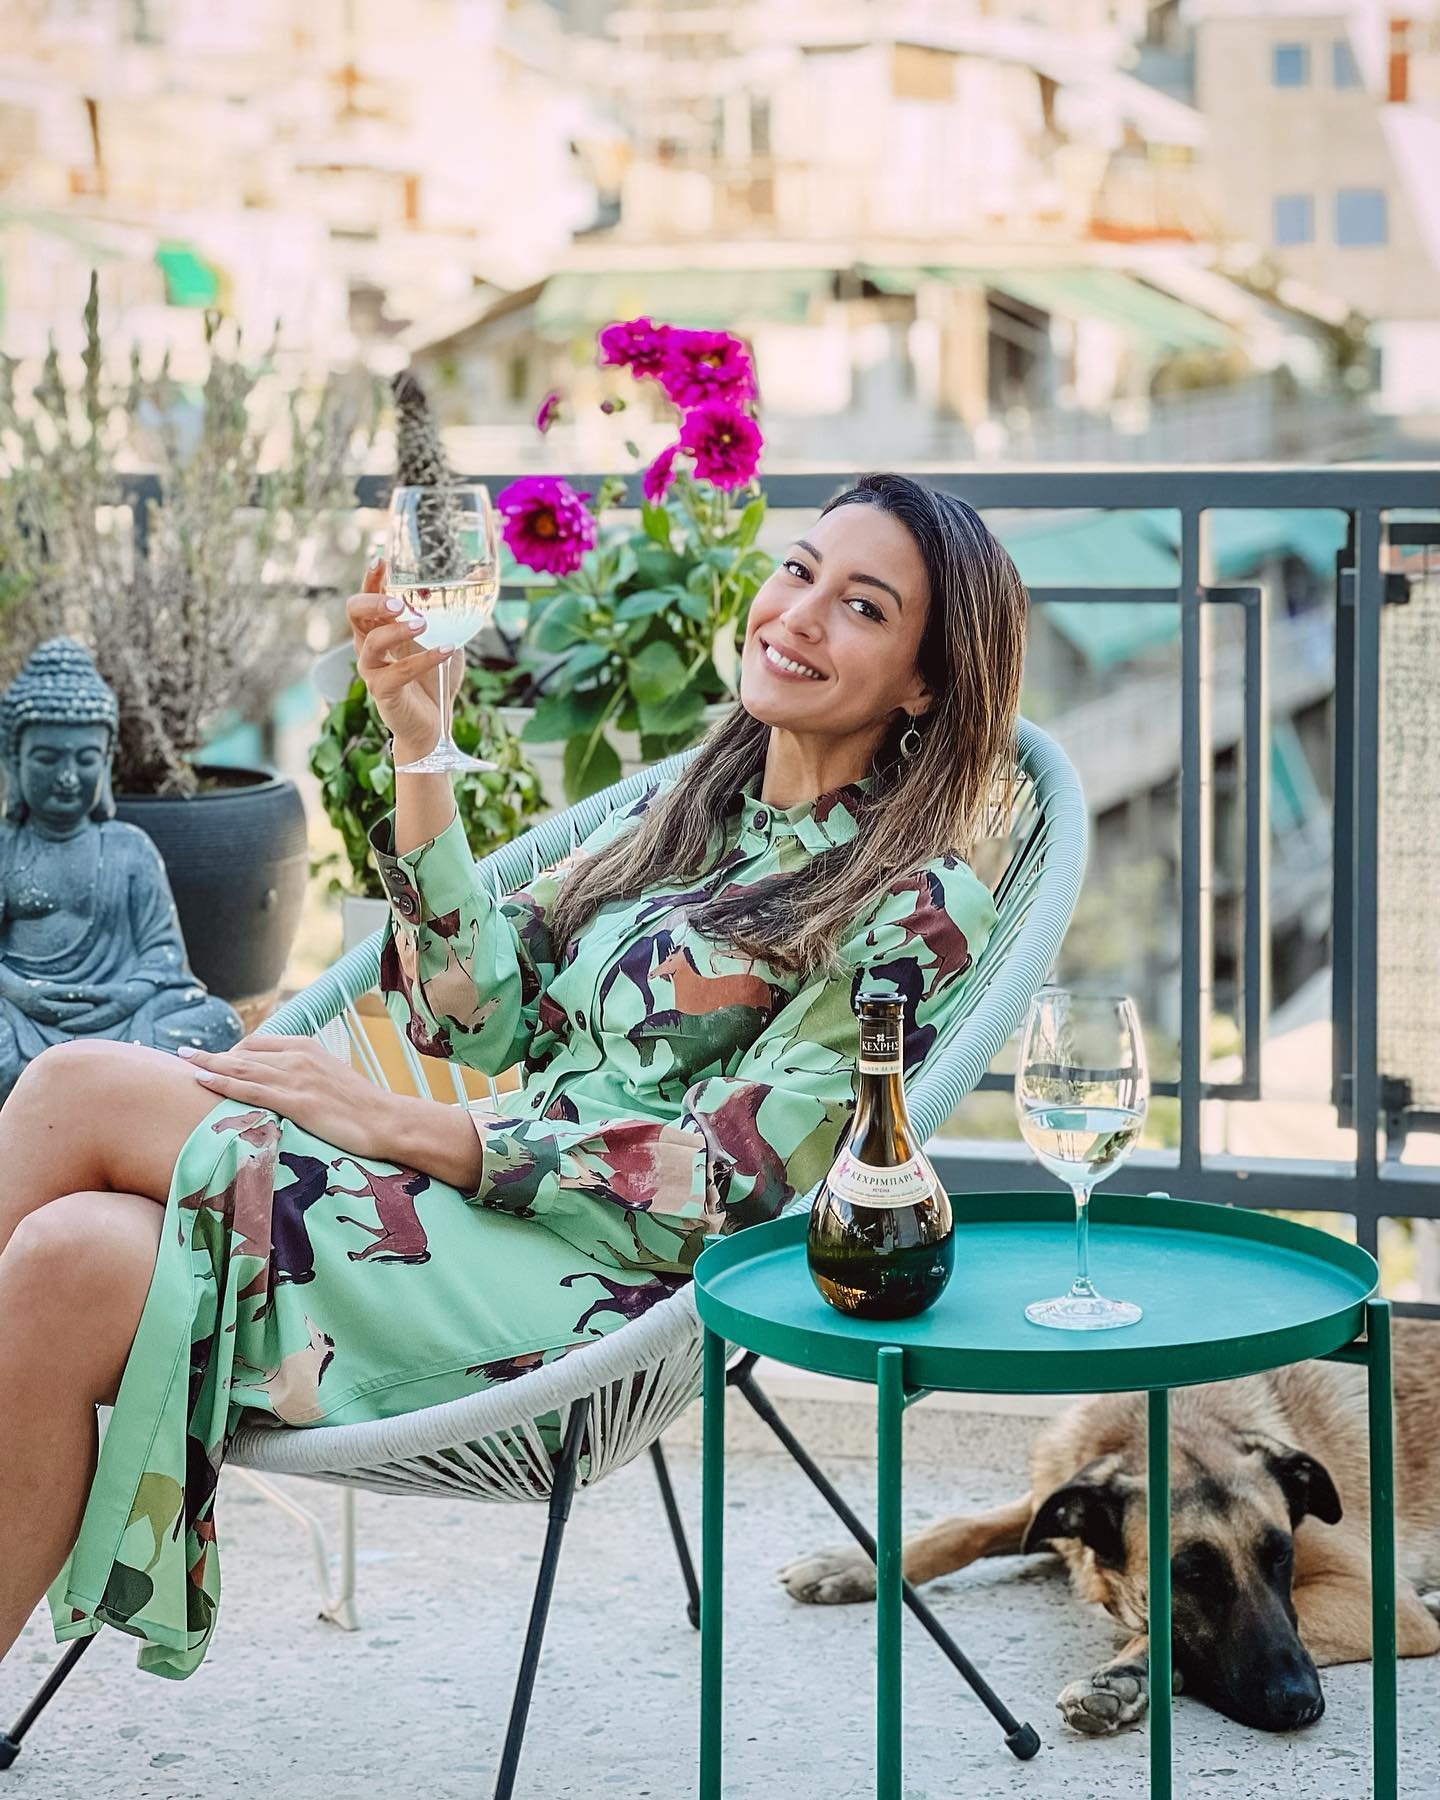 Ευγενία Σαμαρά: Το μπαλκόνι του σπιτιού της με την υπέροχη θέα και τα διακοσμητικά είναι ότι πιο μοντέρνο έχεις δει